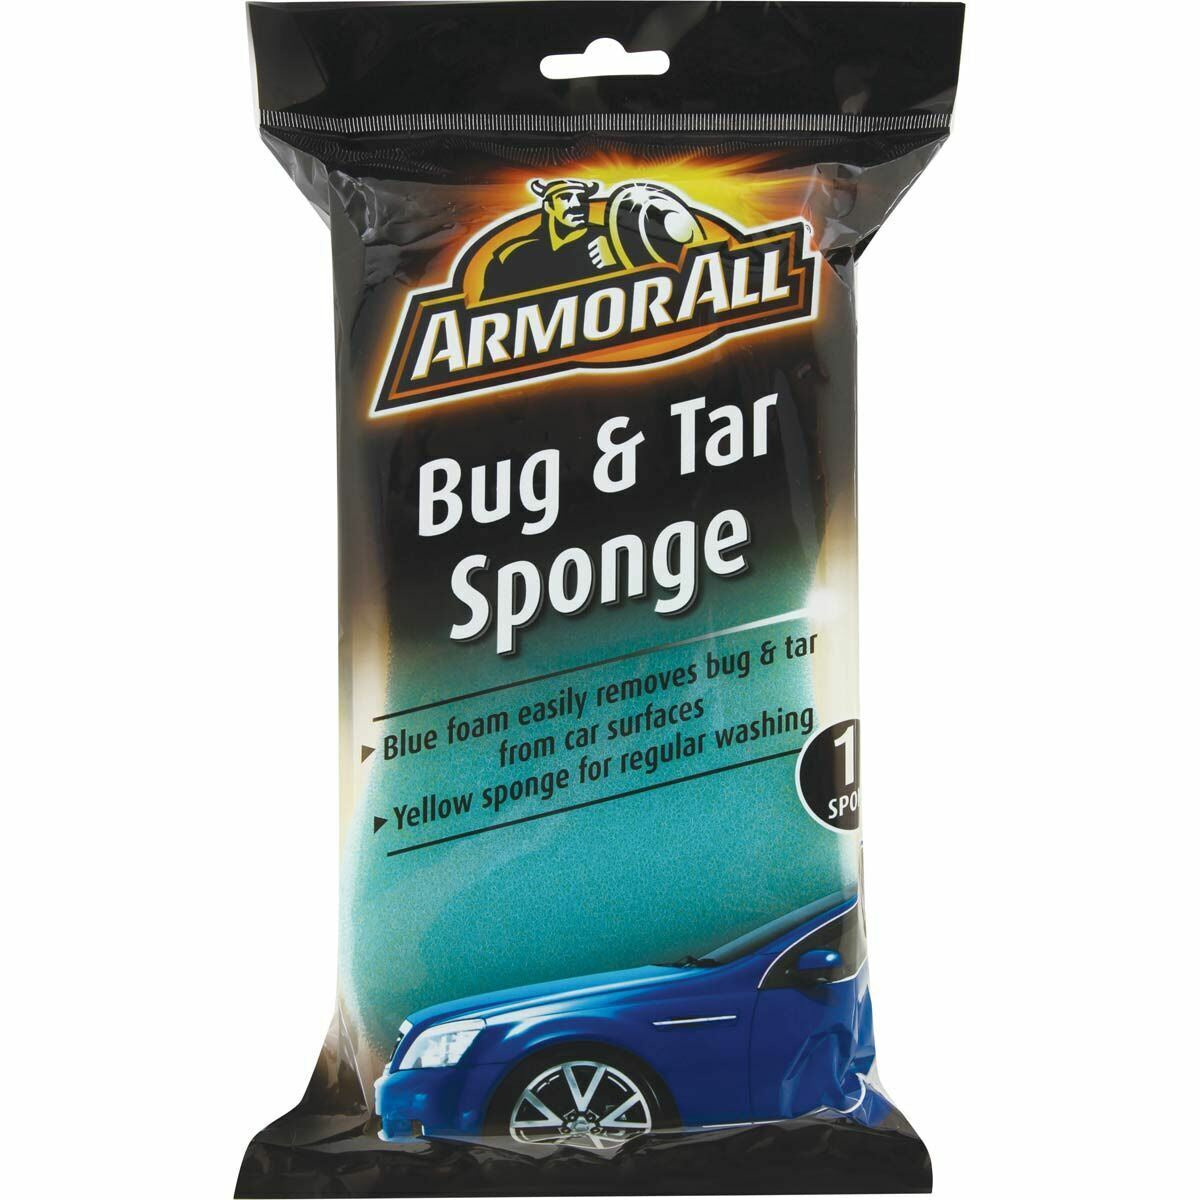 Armor All Bug & Tar Sponge